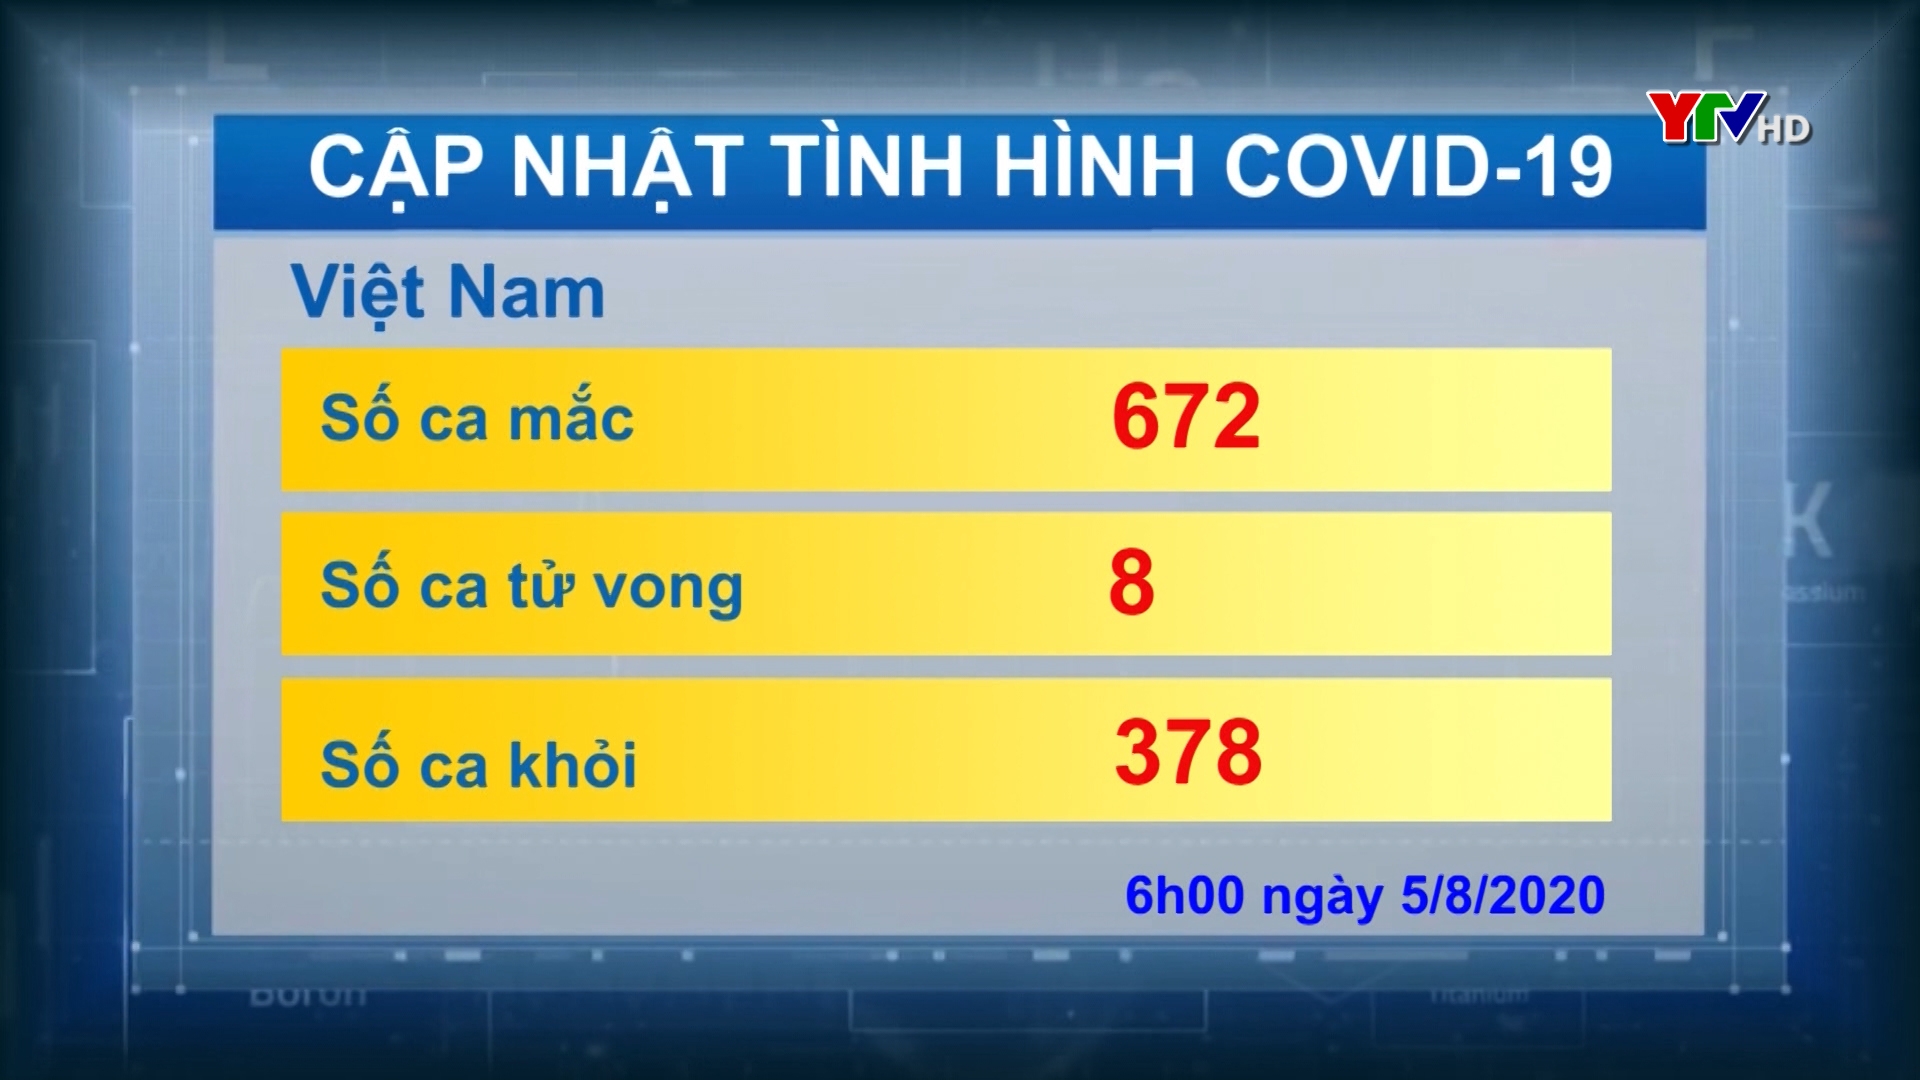 Việt Nam: Ghi nhận thêm 2 ca nhiễm mới COVID - 19